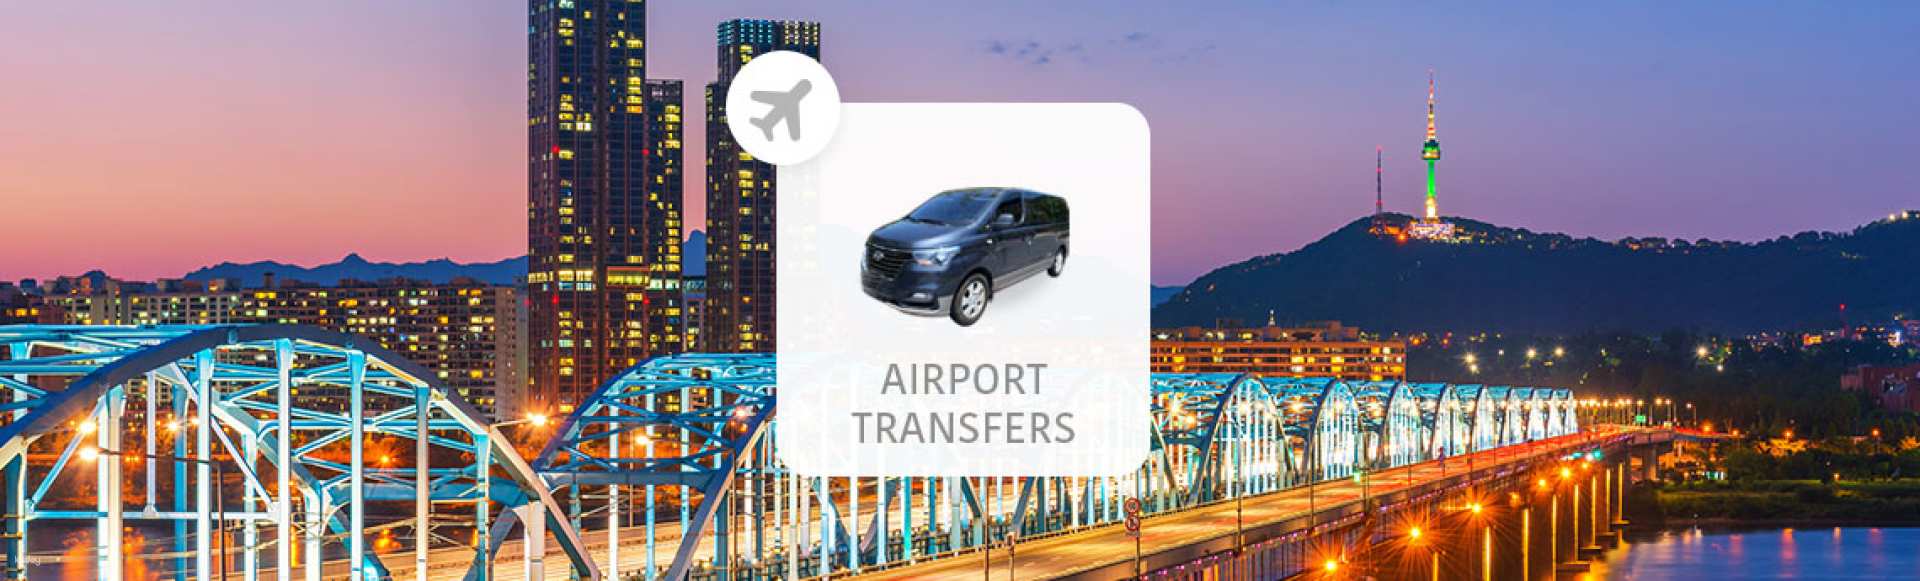 韓國-仁川機場(ICN)與金浦機場至首爾市區機場接送專車| 限時促銷優惠